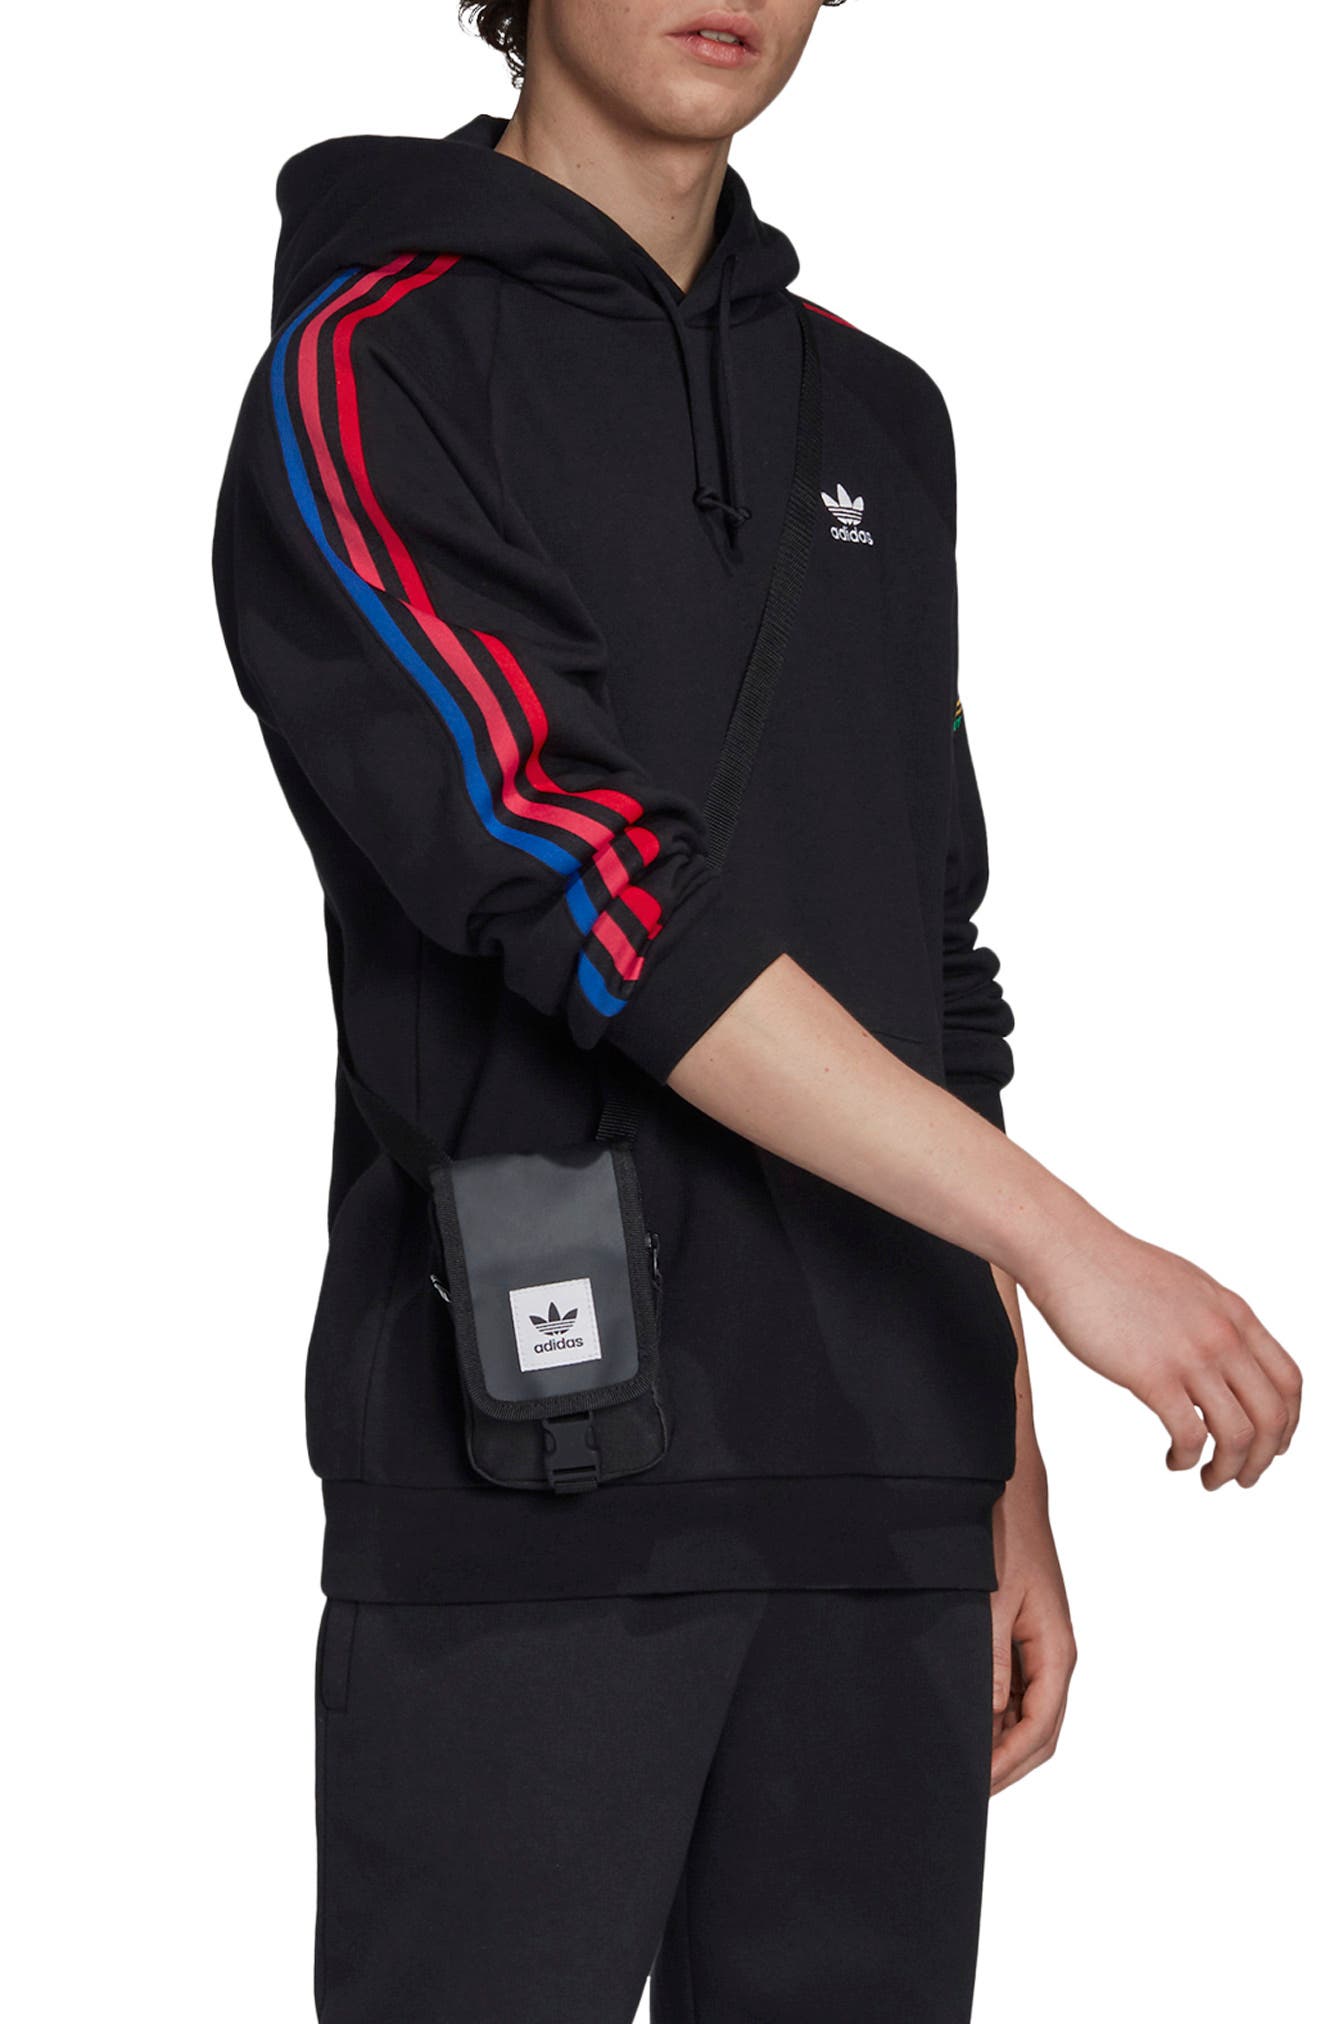 adidas zip up jacket with hood